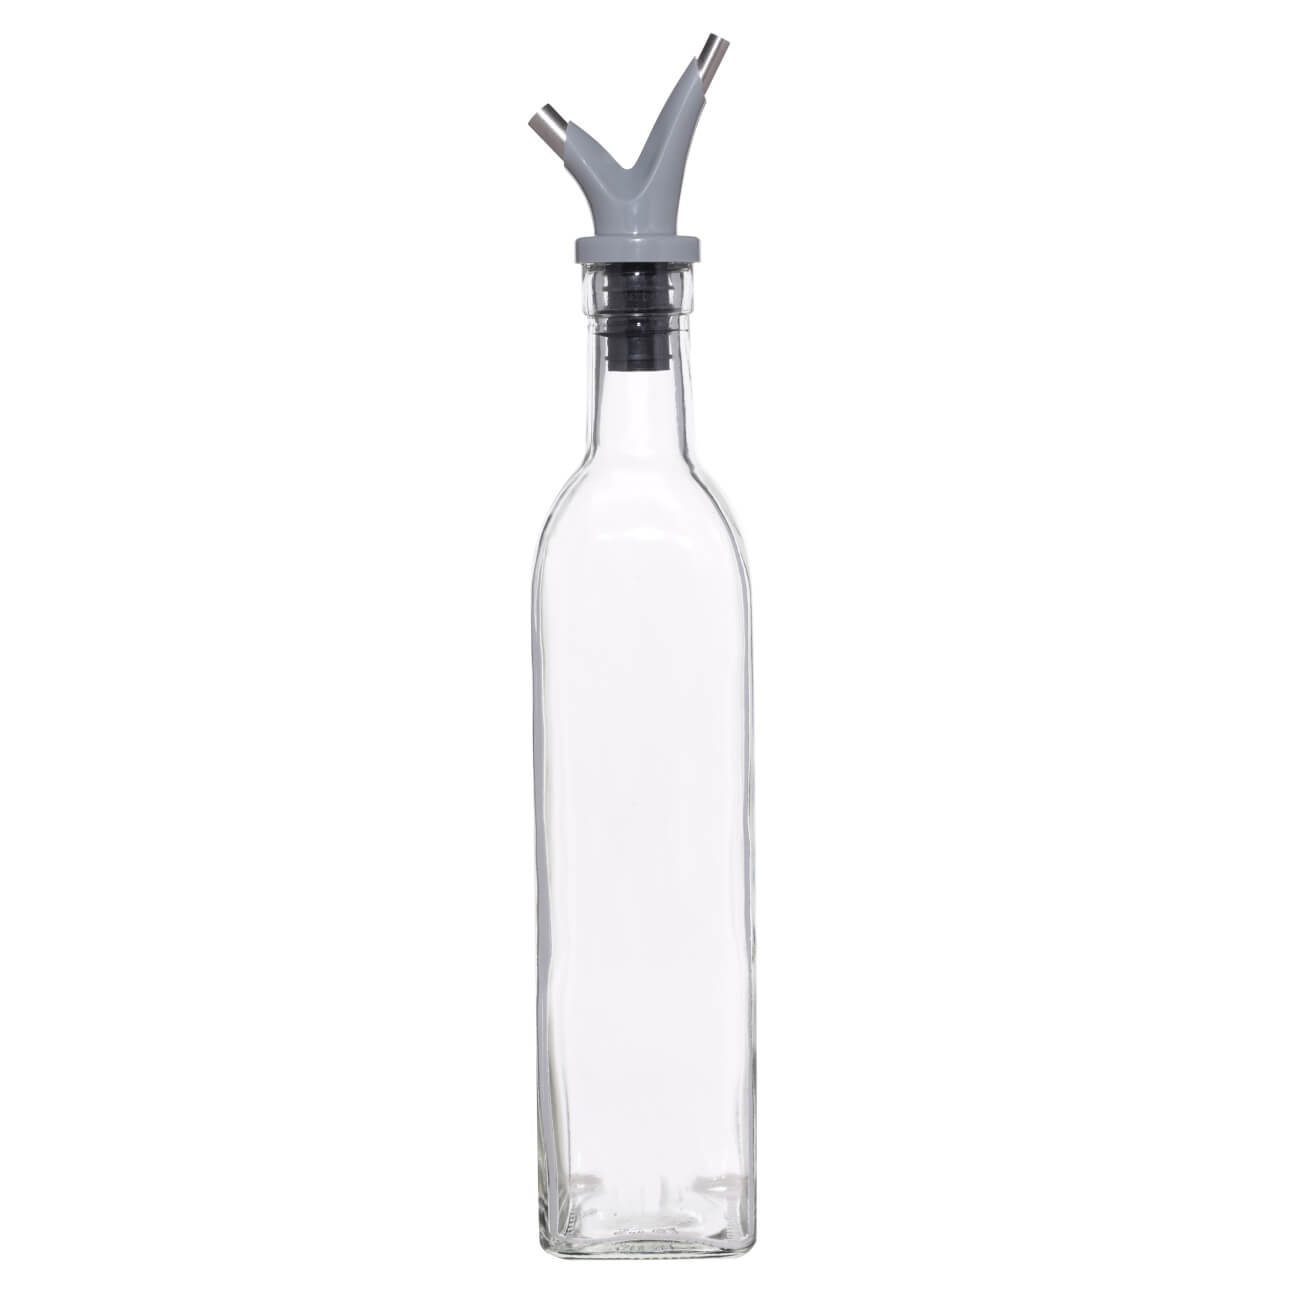 Бутылка для масла или уксуса, 500 мл, с двойным дозатором, стекло/пластик, Assist бутылка для масла уксуса mallony 500мл стеклянная с дозатором 103806